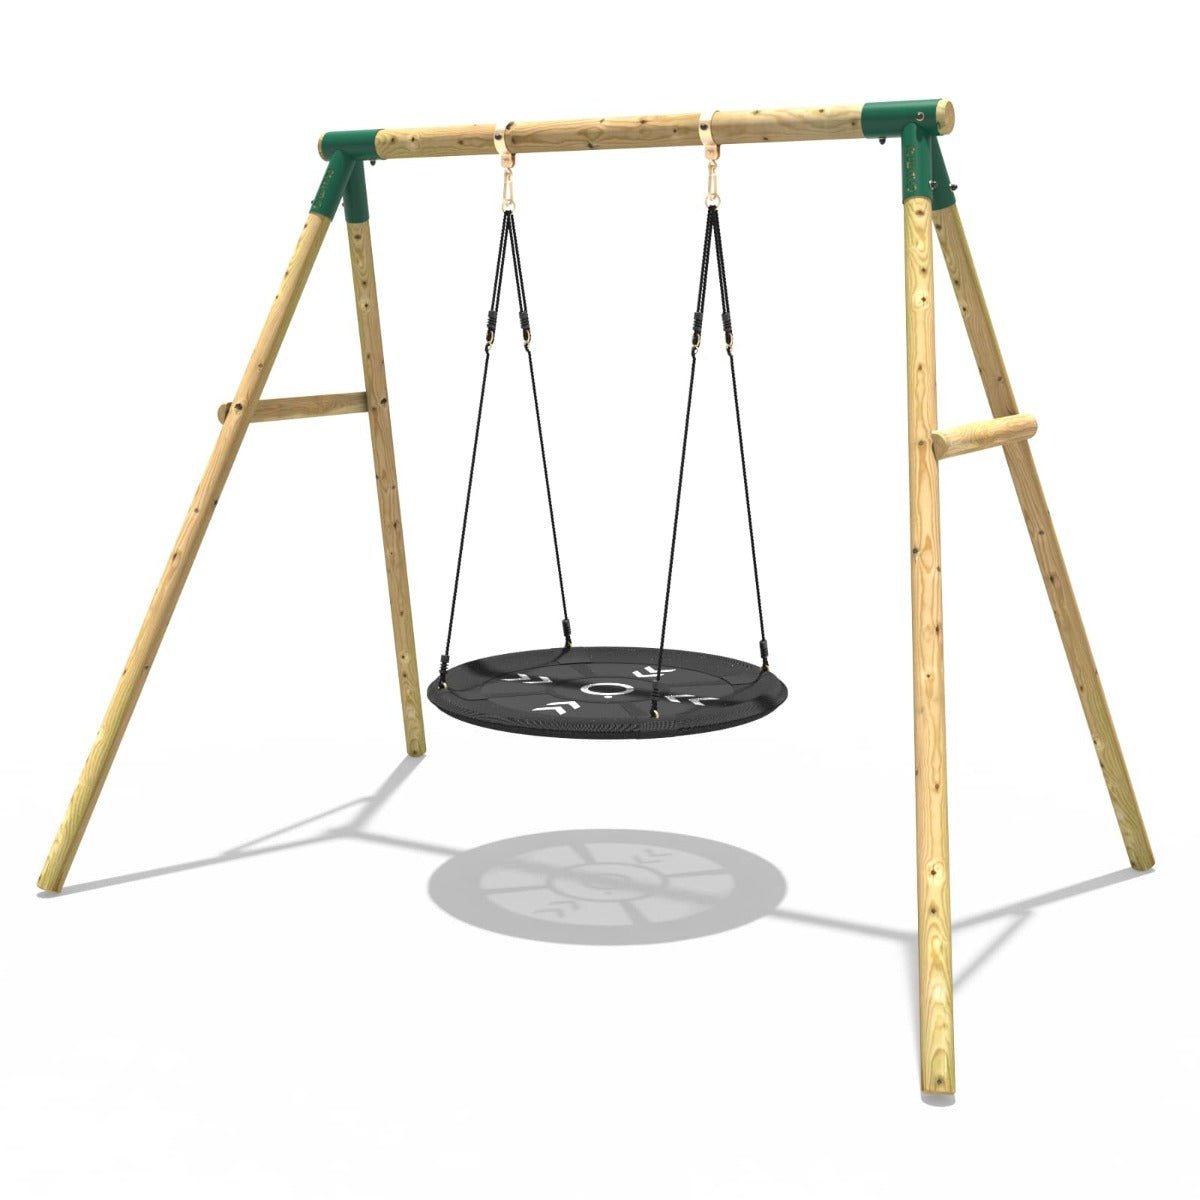 Rebo Wooden Garden Single Round Net Swing Set - Mercury